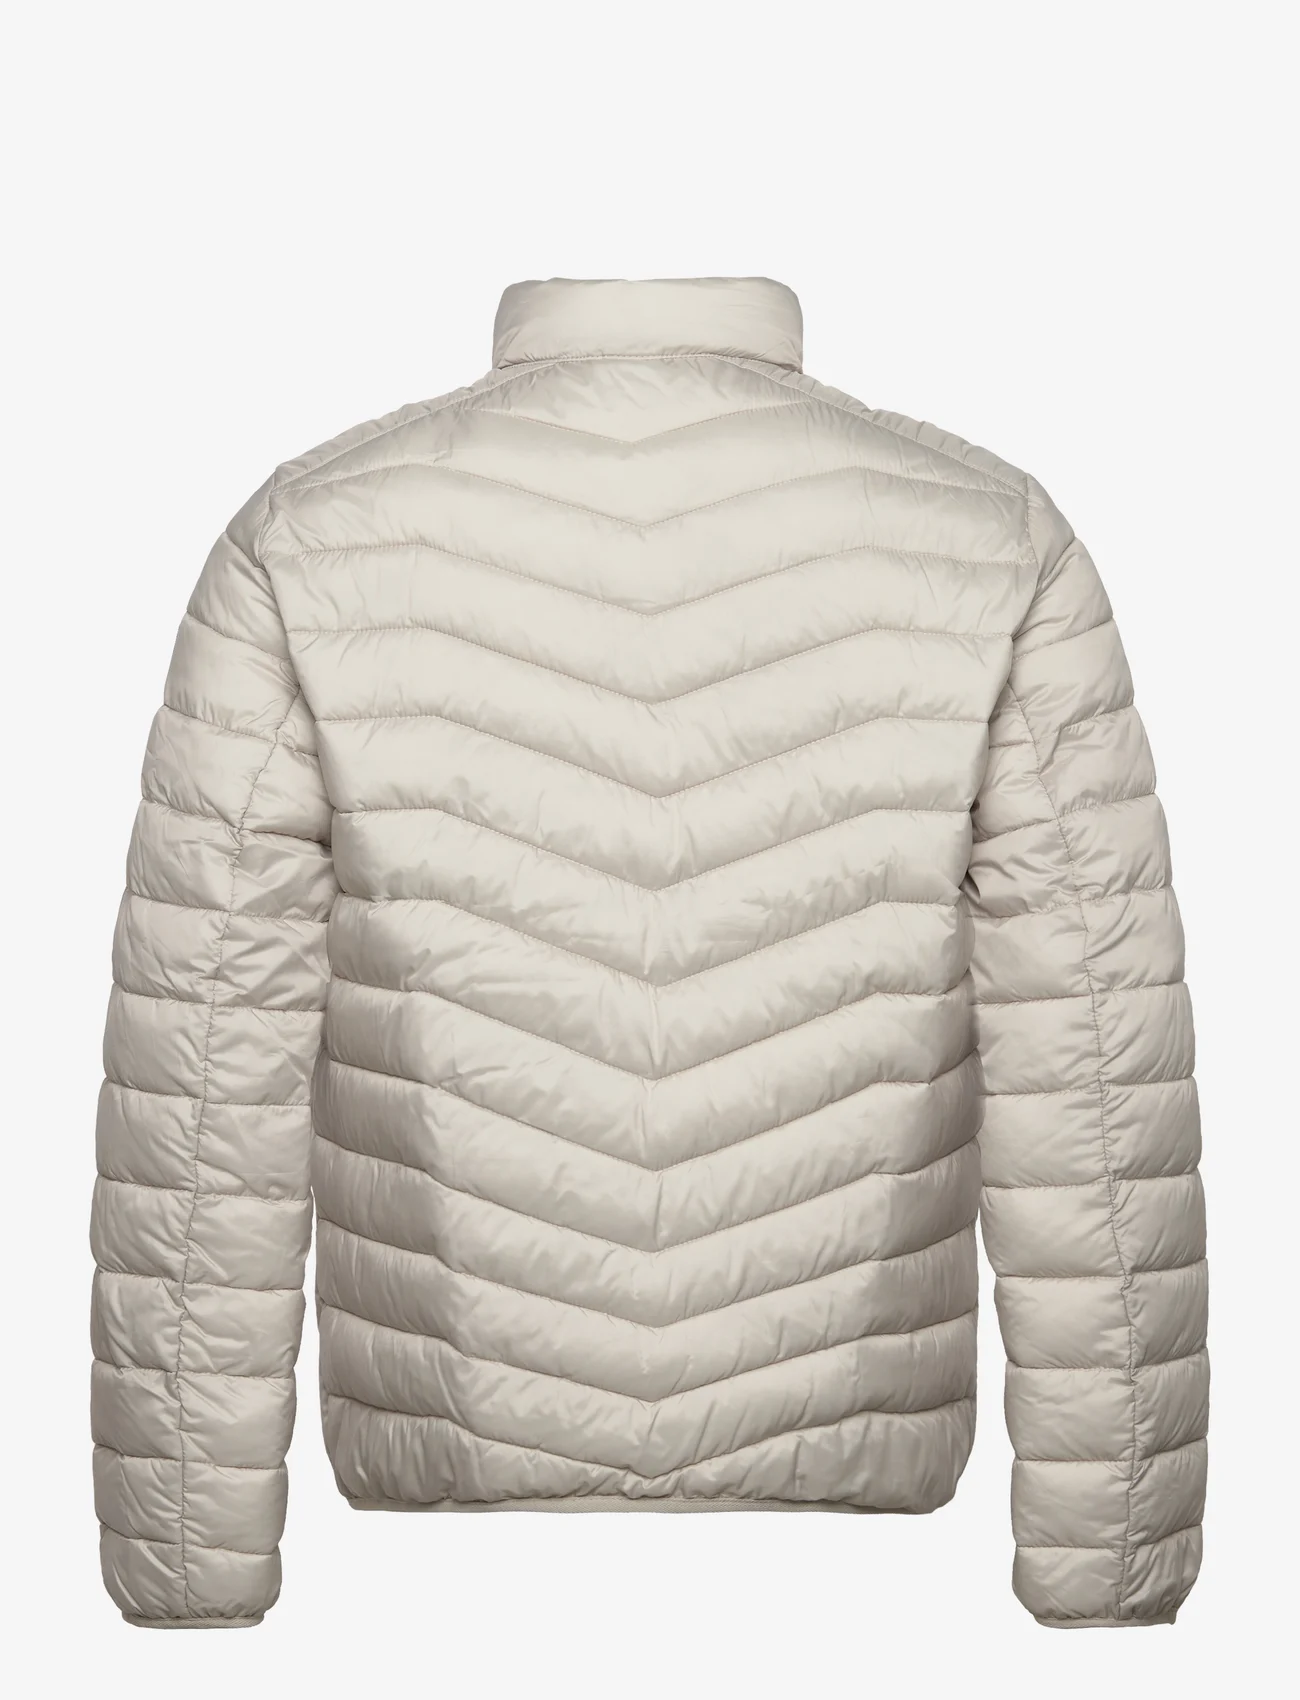 Tom Tailor - light weight jacket - talvitakit - beige alfalfa - 1